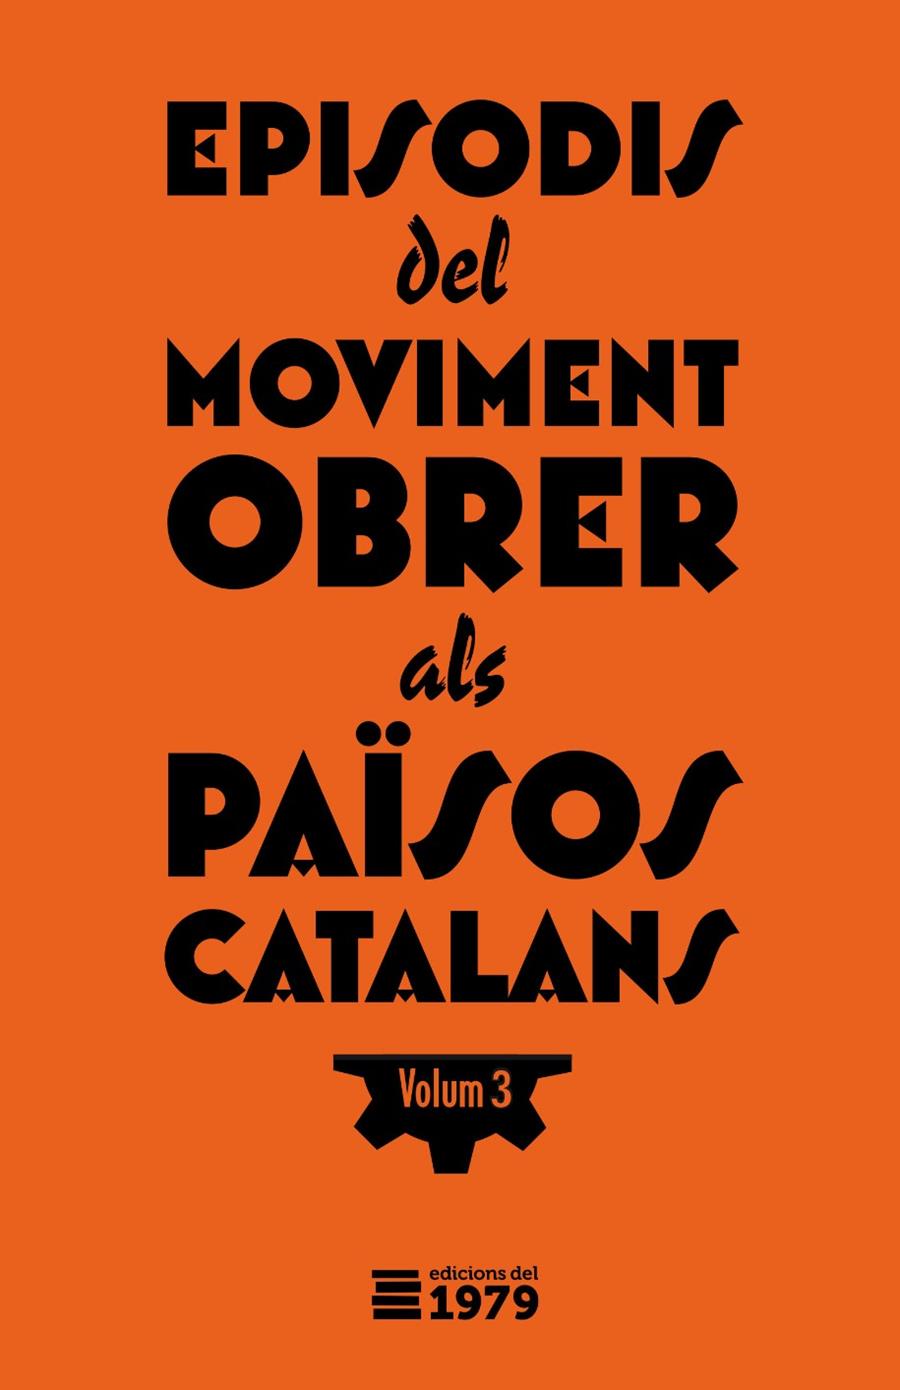 Episodis del moviment obrer als Països Catlans 3 | Varios autores | Cooperativa autogestionària